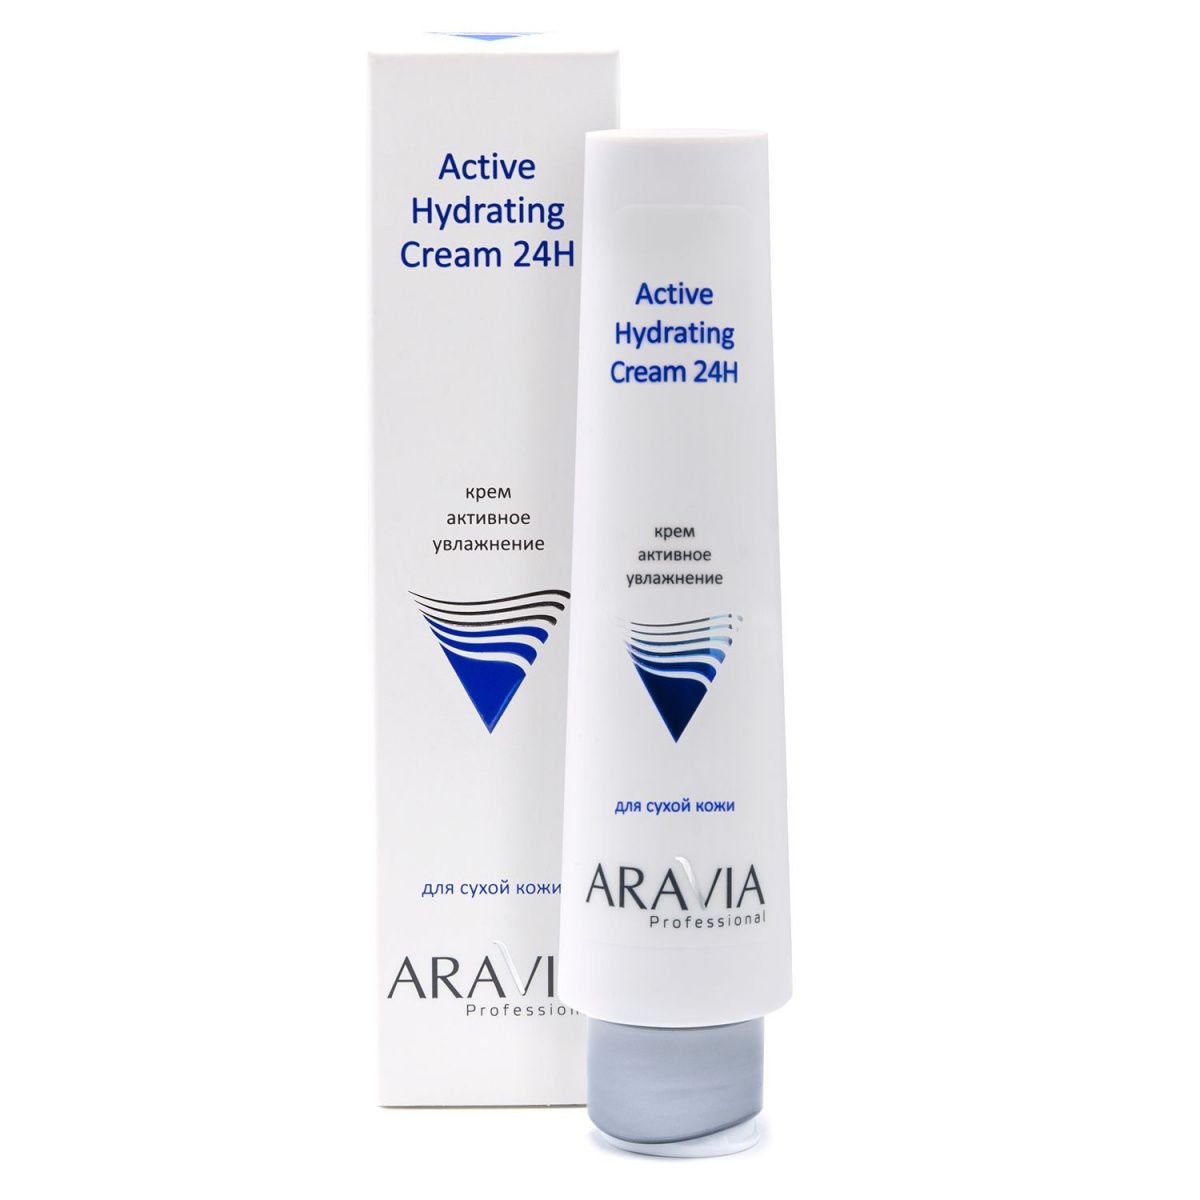 Aravia Крем для лица активное увлажнение / Active Hydrating Cream 24H, 100 мл